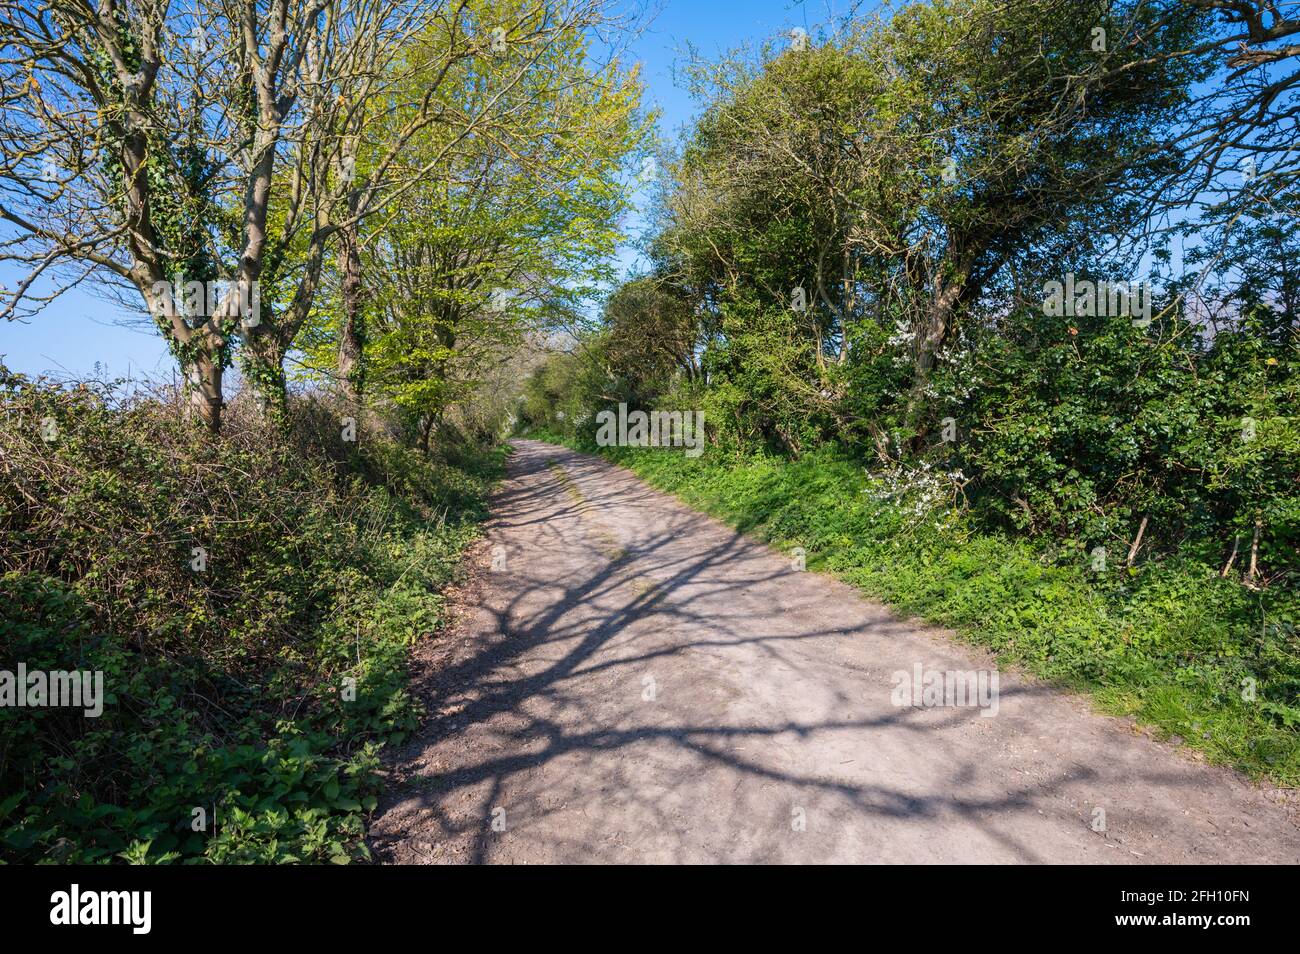 Route de terre droite ou piste de campagne sans marquage routier avec arbres et haies bordant la route dans la campagne britannique à West Sussex, Angleterre, Royaume-Uni. Banque D'Images